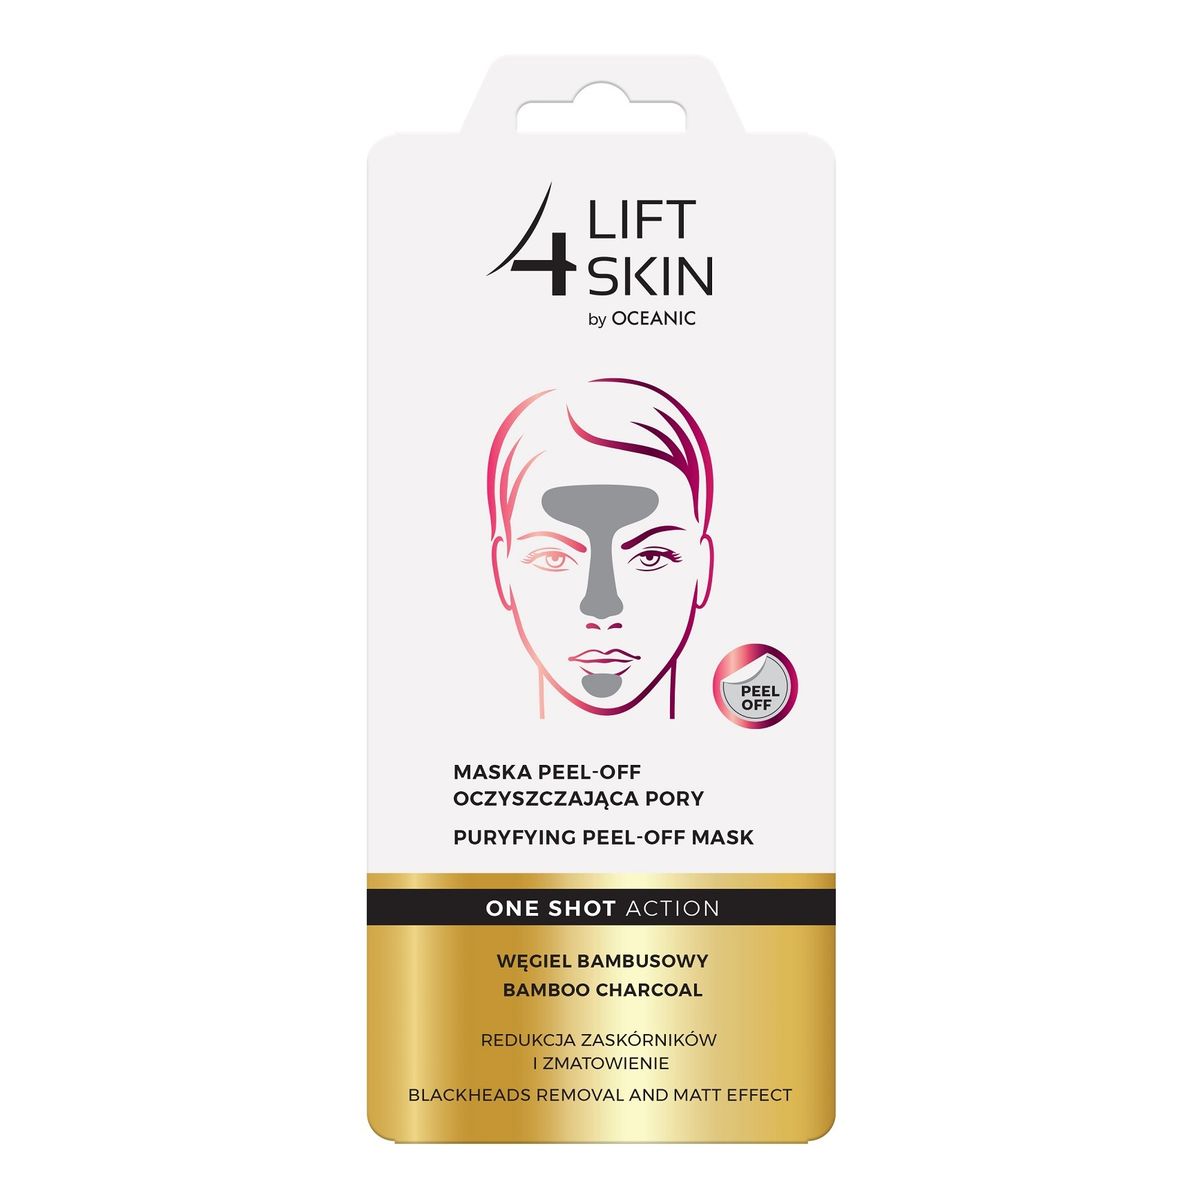 Lift 4 Skin One Shot Action Maska peel-off oczyszczająca pory 8ml